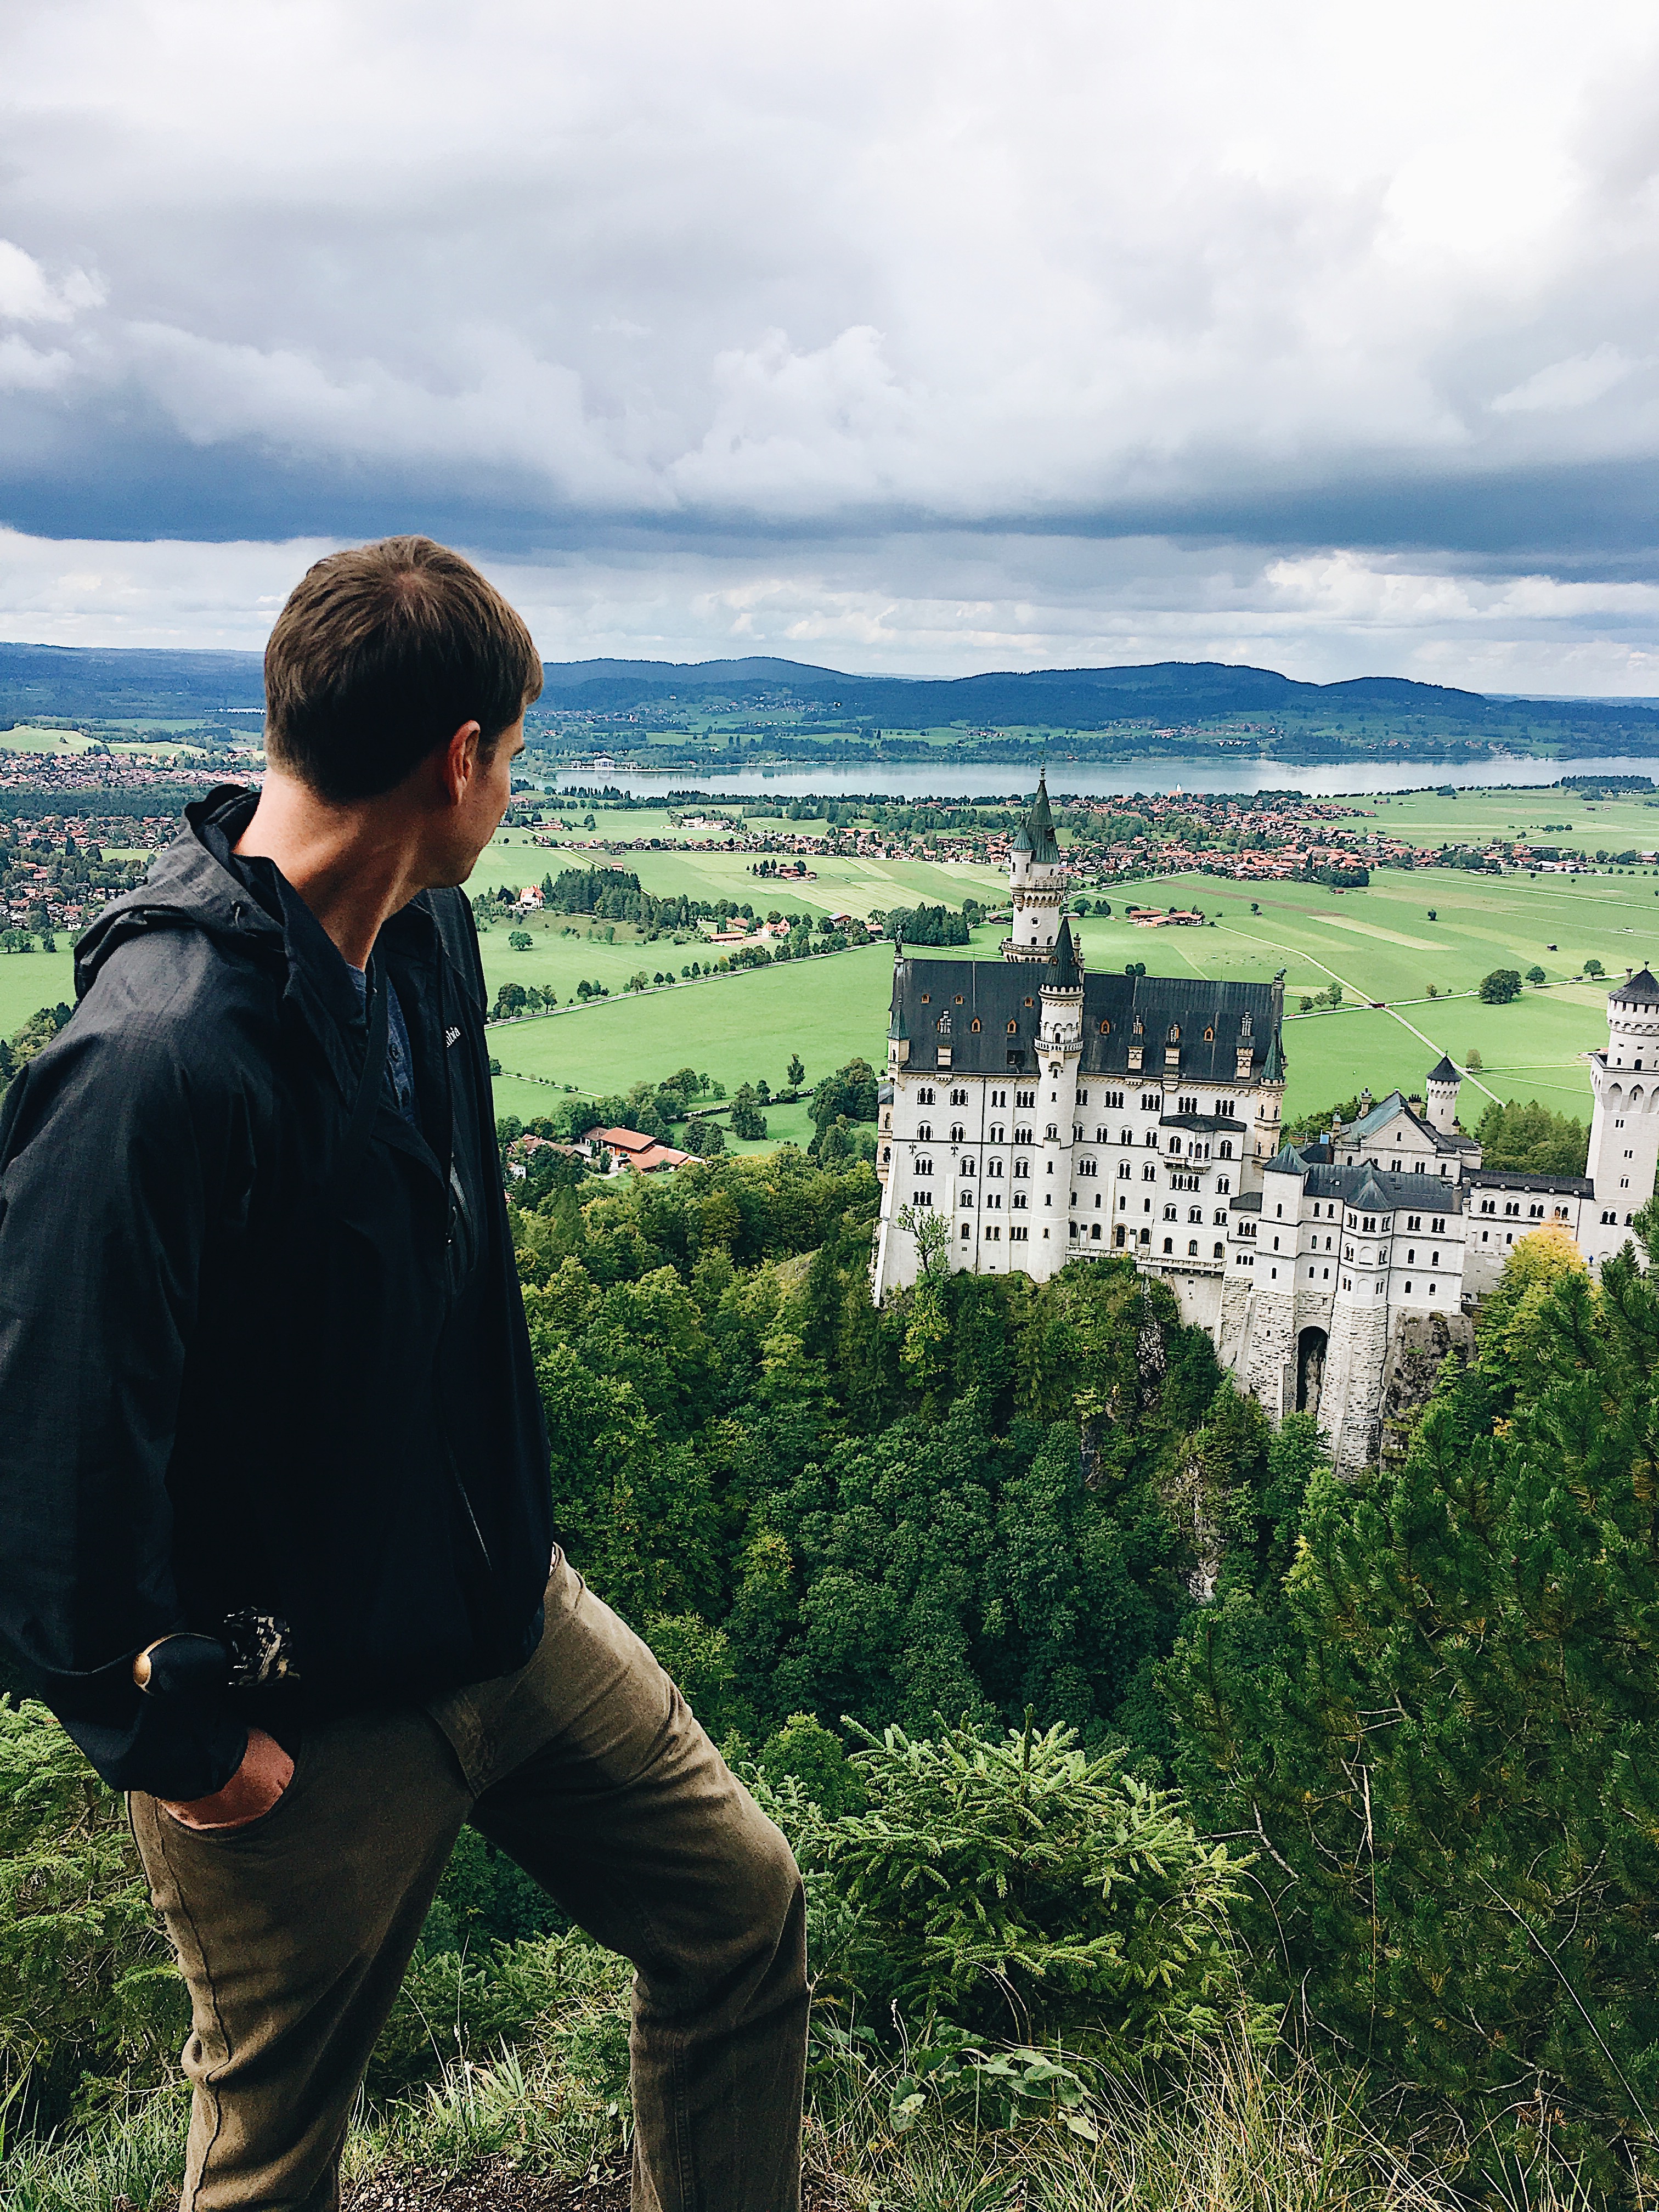 Amazin views of Neuscwanstein castle